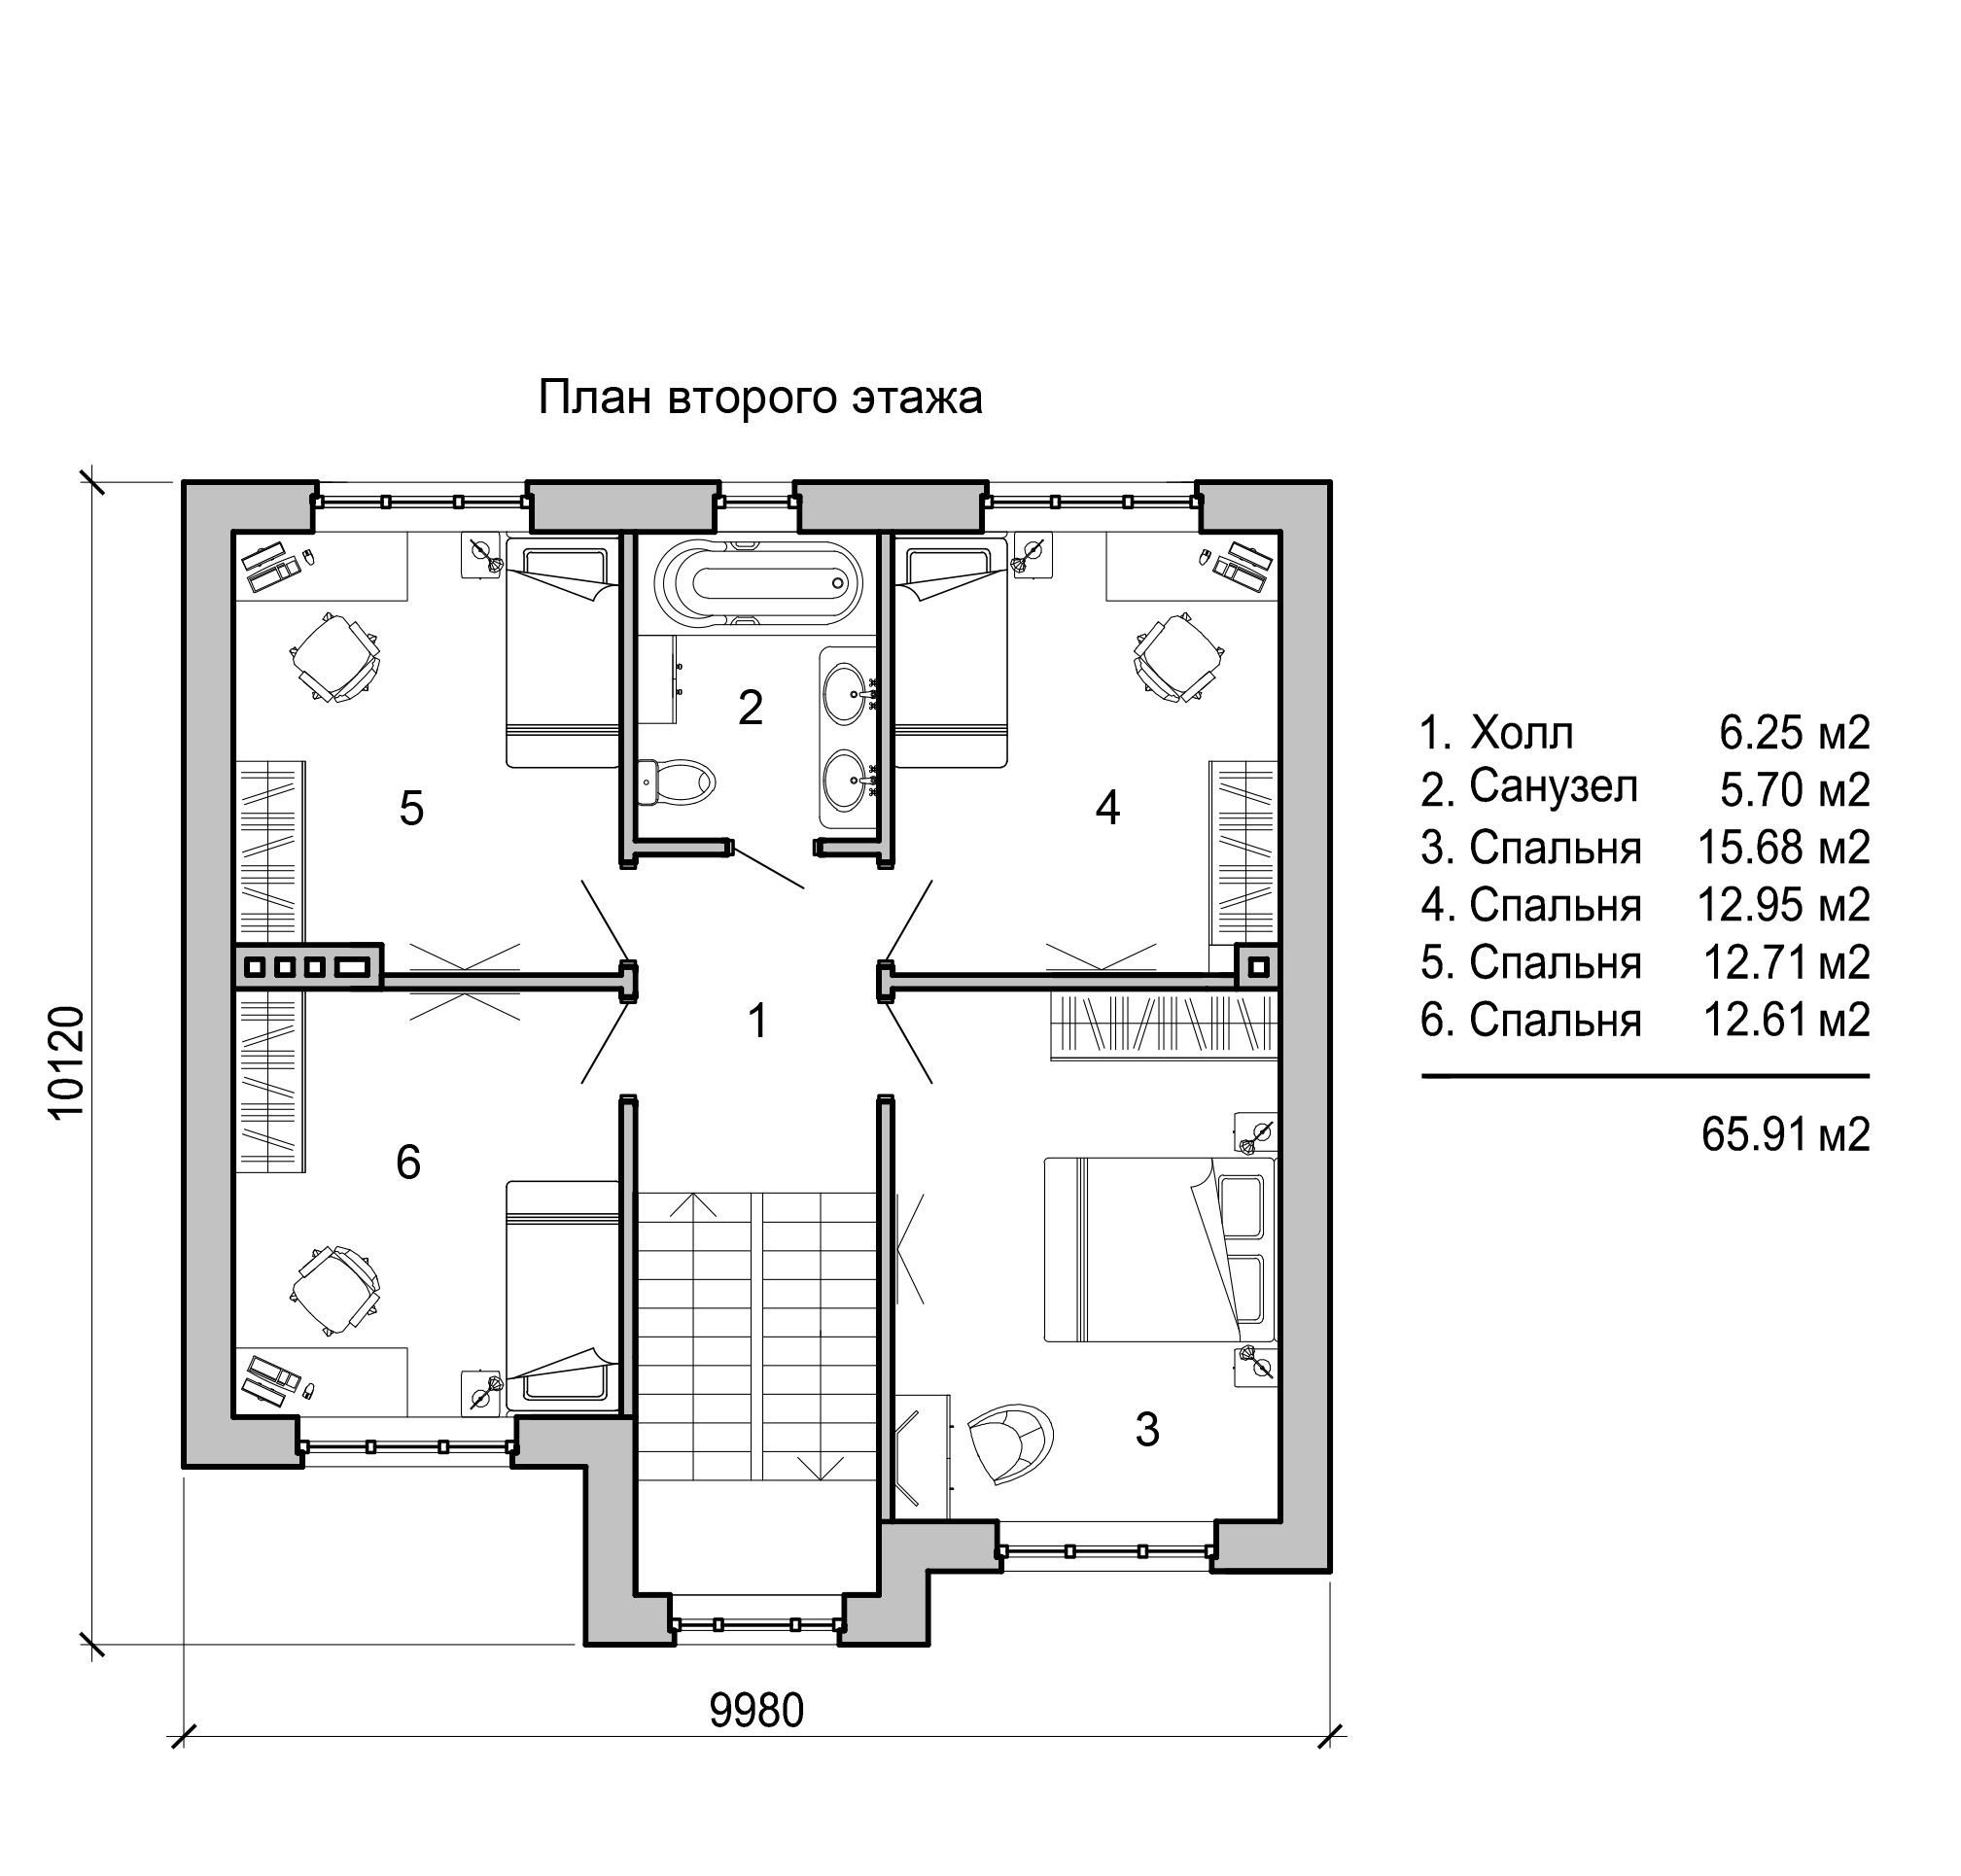 Проект дома 140 кв м. Планировка дома 140 кв.м двухэтажный. План двухэтажного дома с тремя спальнями. План дома с 3 спальнями двухэтажный. План дома на 140 кв двухэтажный.